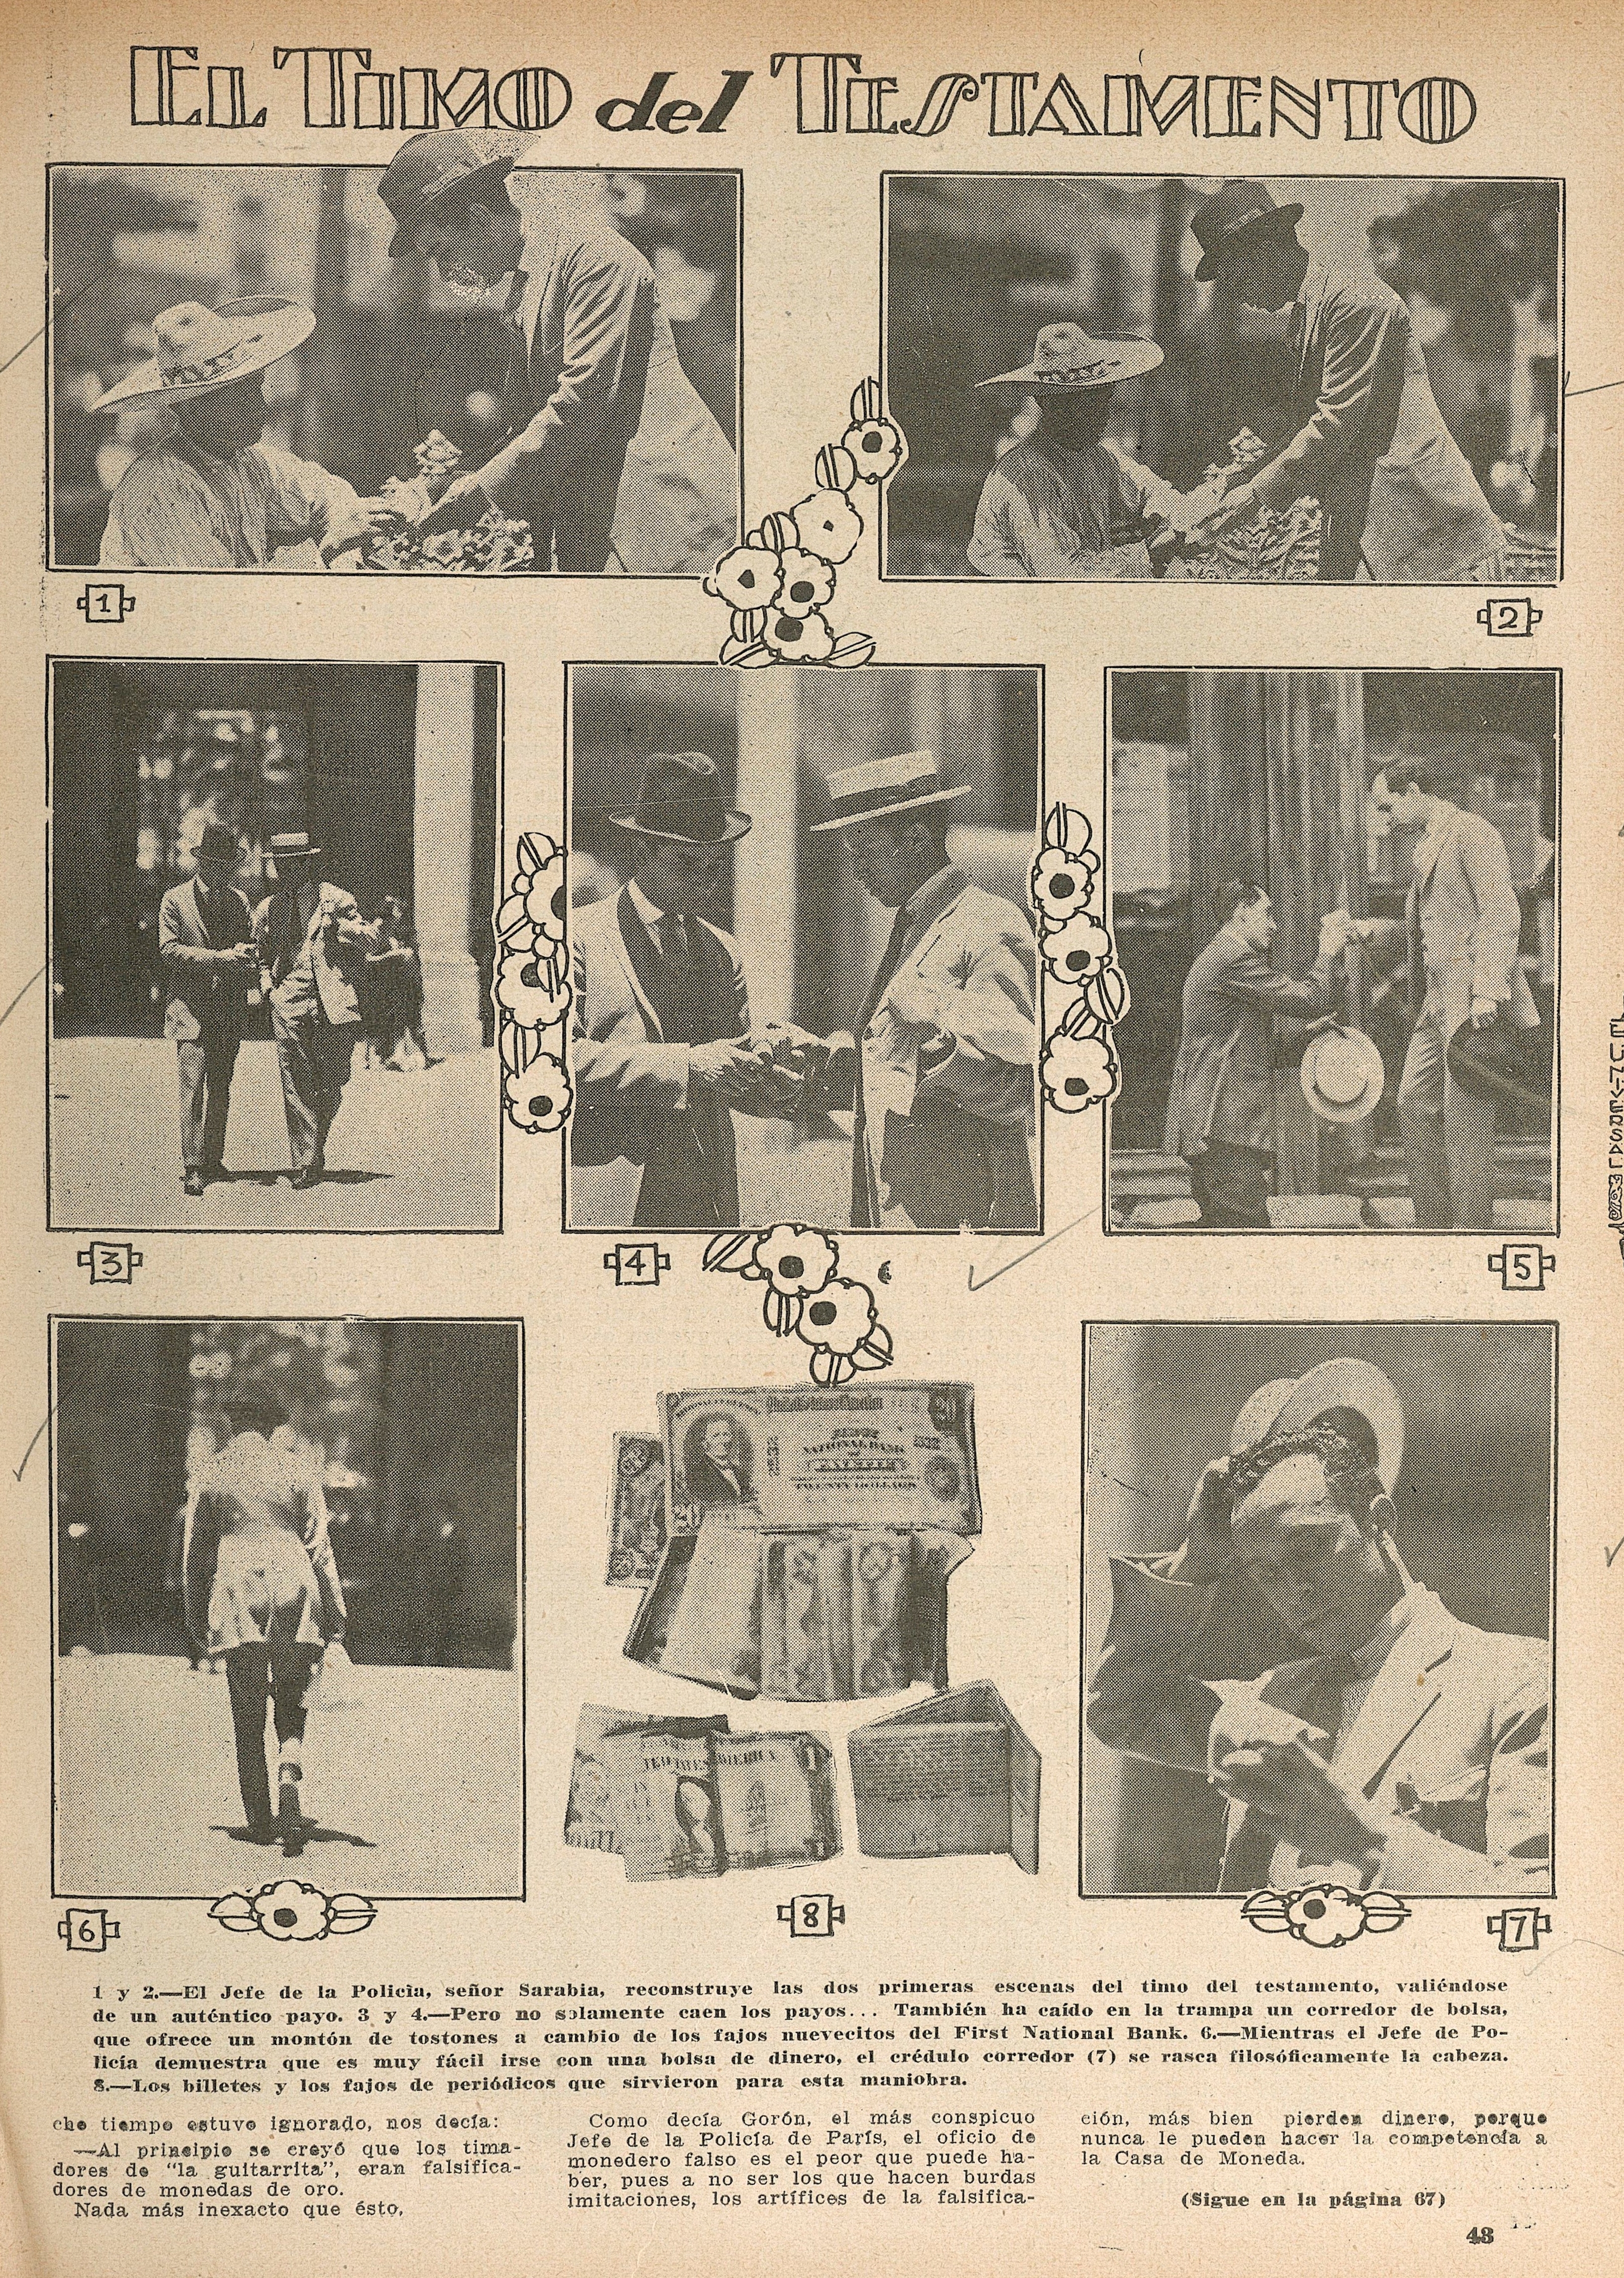 El arte de "timar" en los años 20